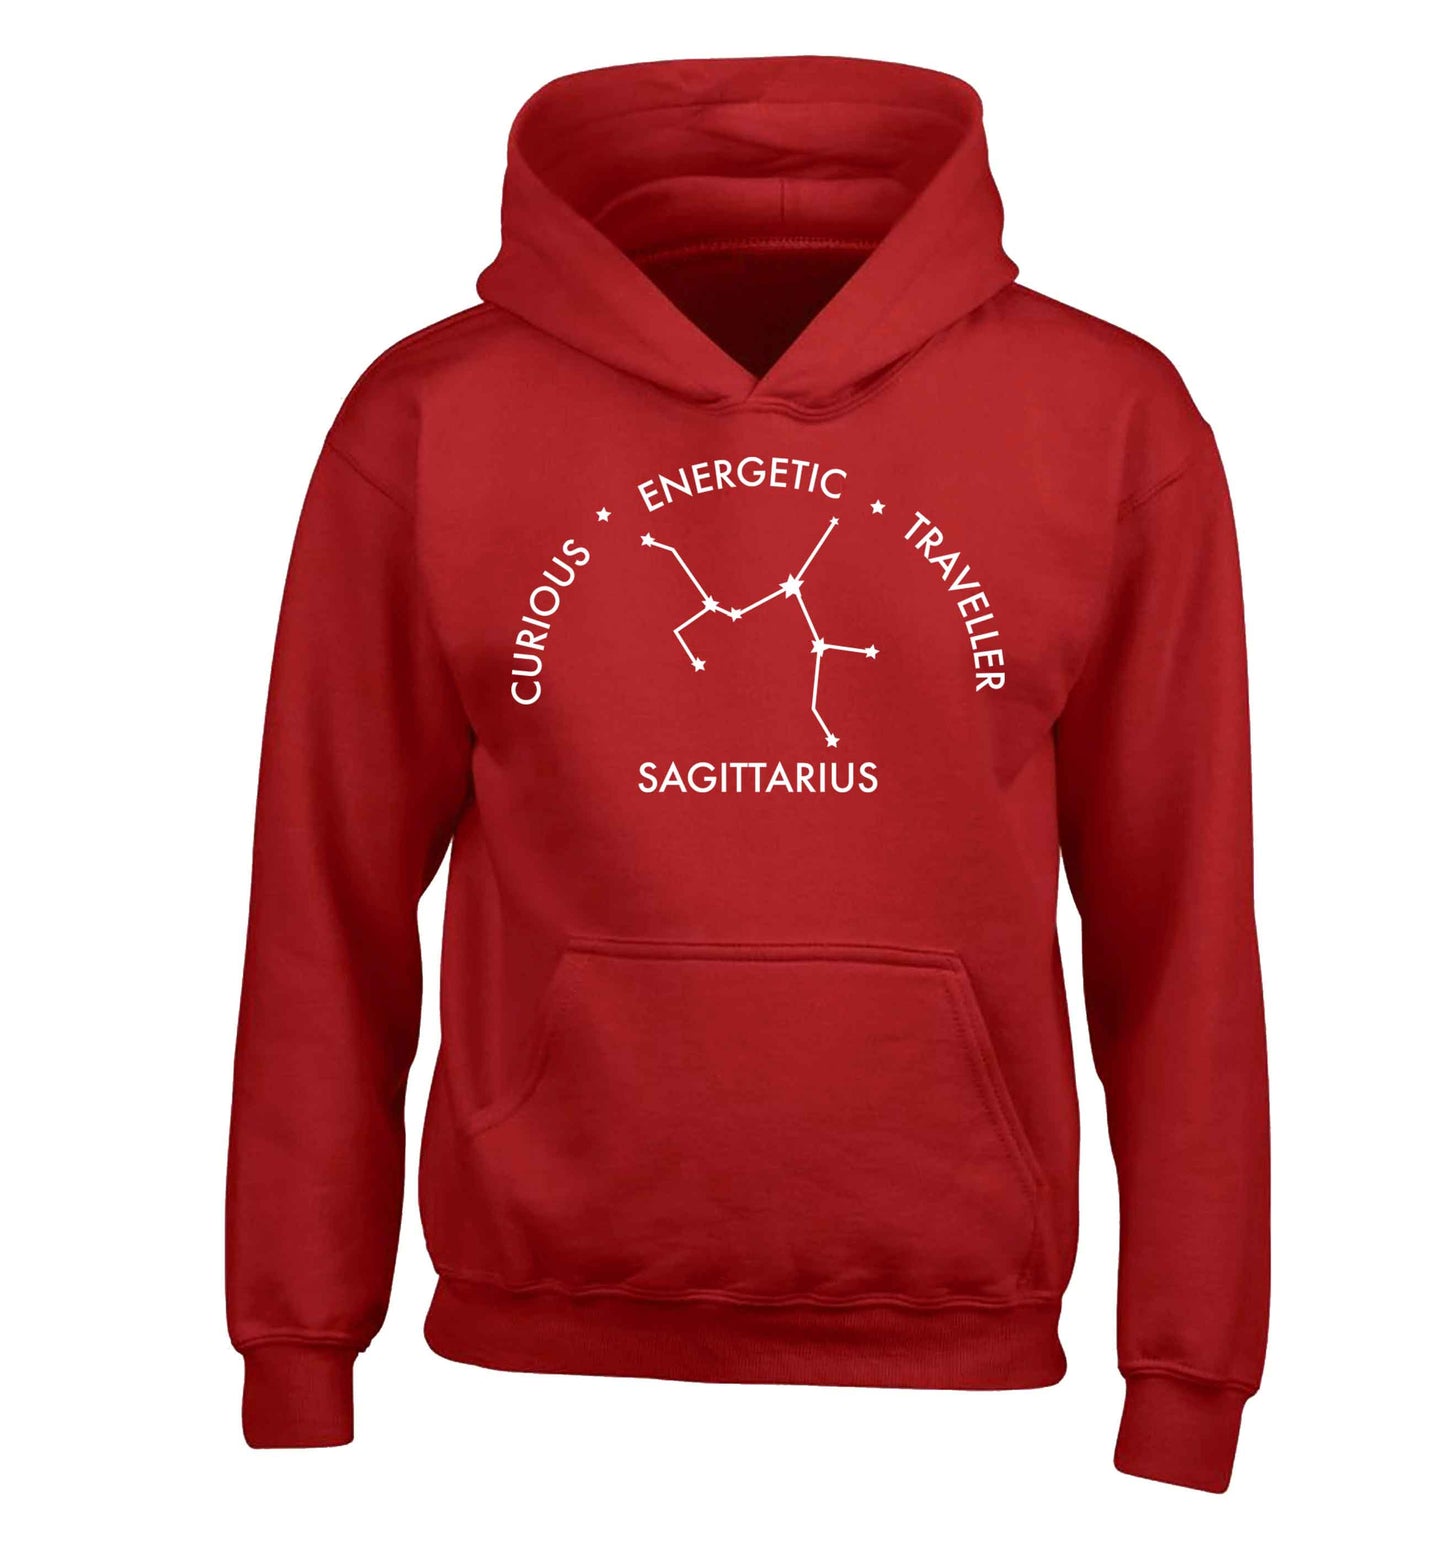 Sagittarius, curious, energetic, traveller children's red hoodie 12-13 Years